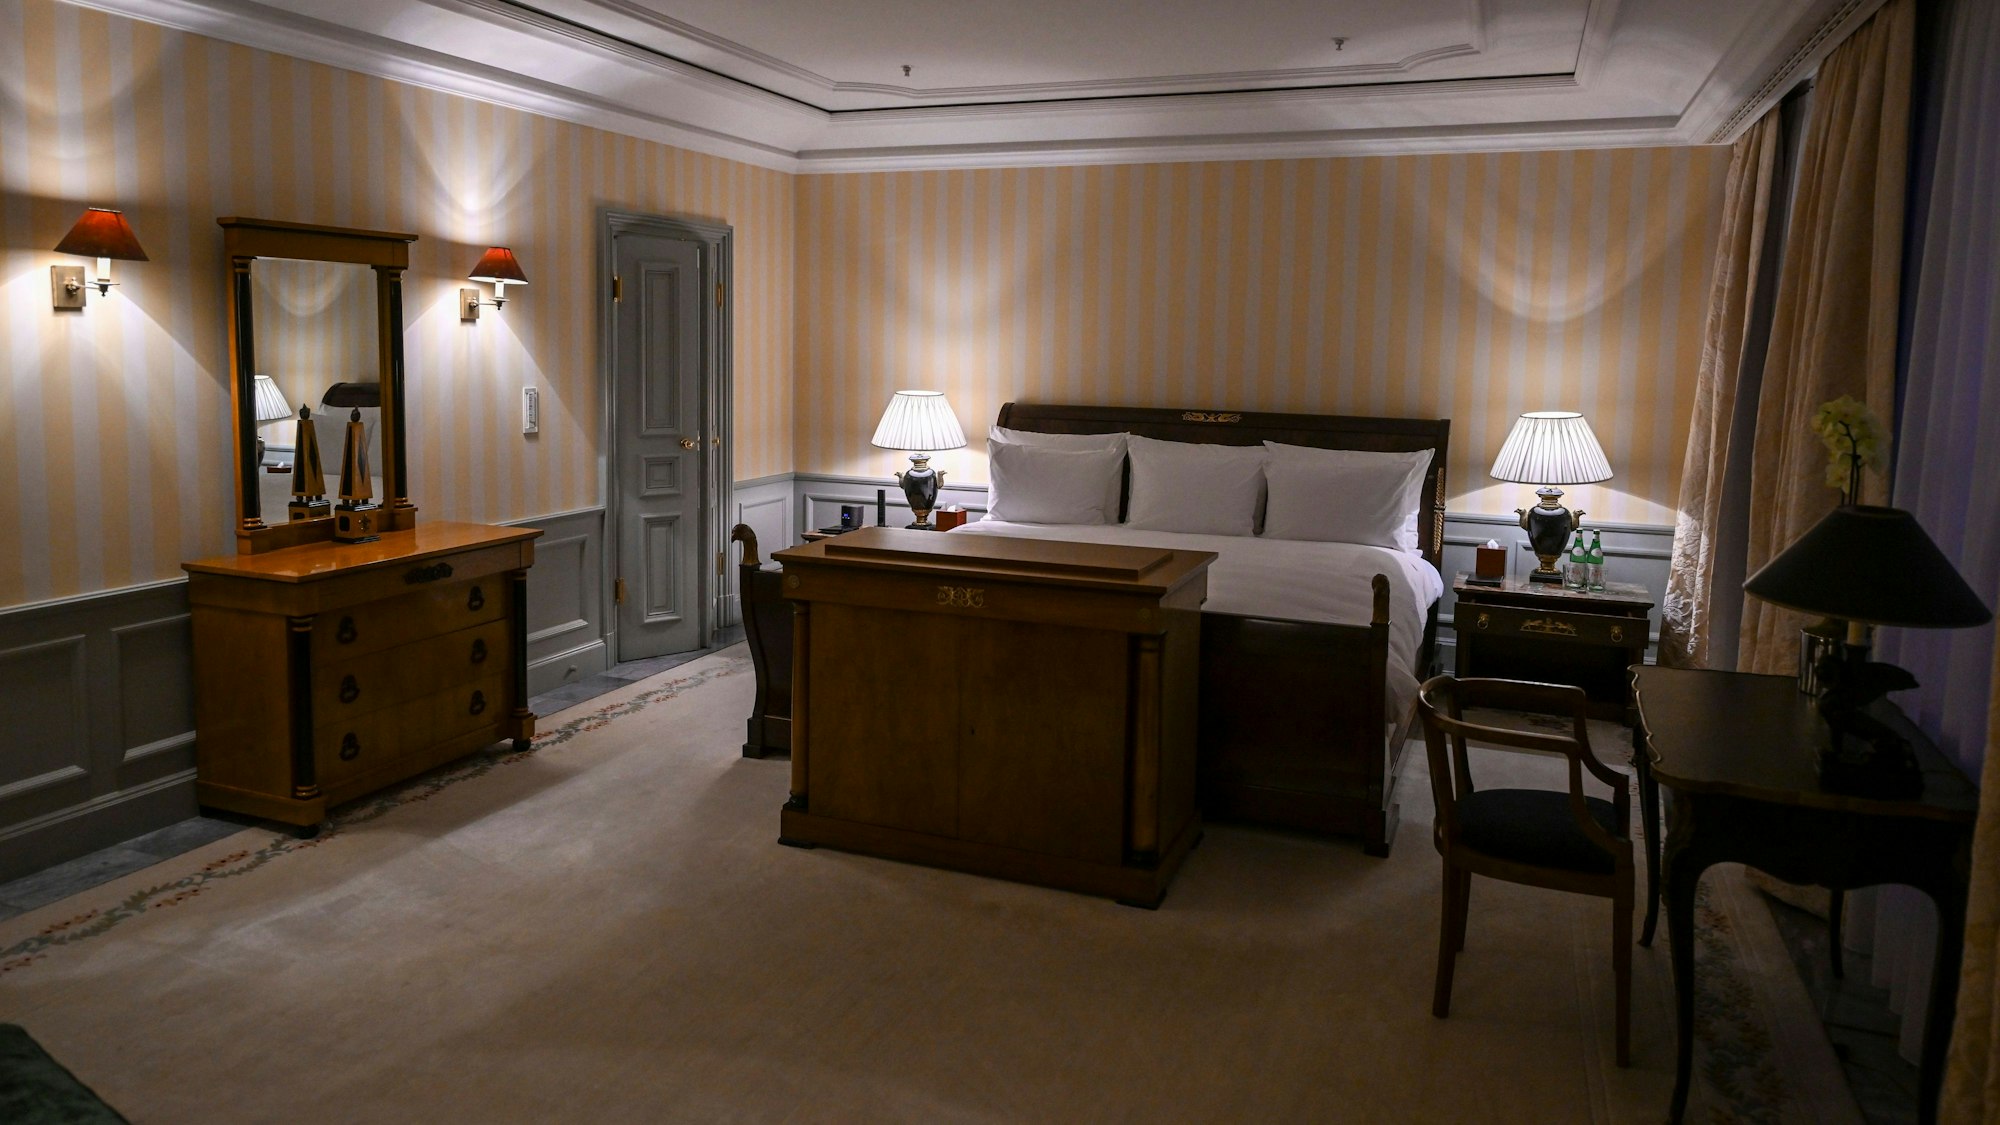 Das Bett im Schlafzimmer der Royal Suite im Hotel Adlon hat King Size Übergröße und einen Ausblick auf das Brandenburger Tor. Zu manchen Details eines königlichen Besuchs wird traditionell geschwiegen. Insidern zufolge wird König Charles III. wohl dort unterkommen, wo bereits seine Mutter Queen Elizabeth II. zu Gast war.